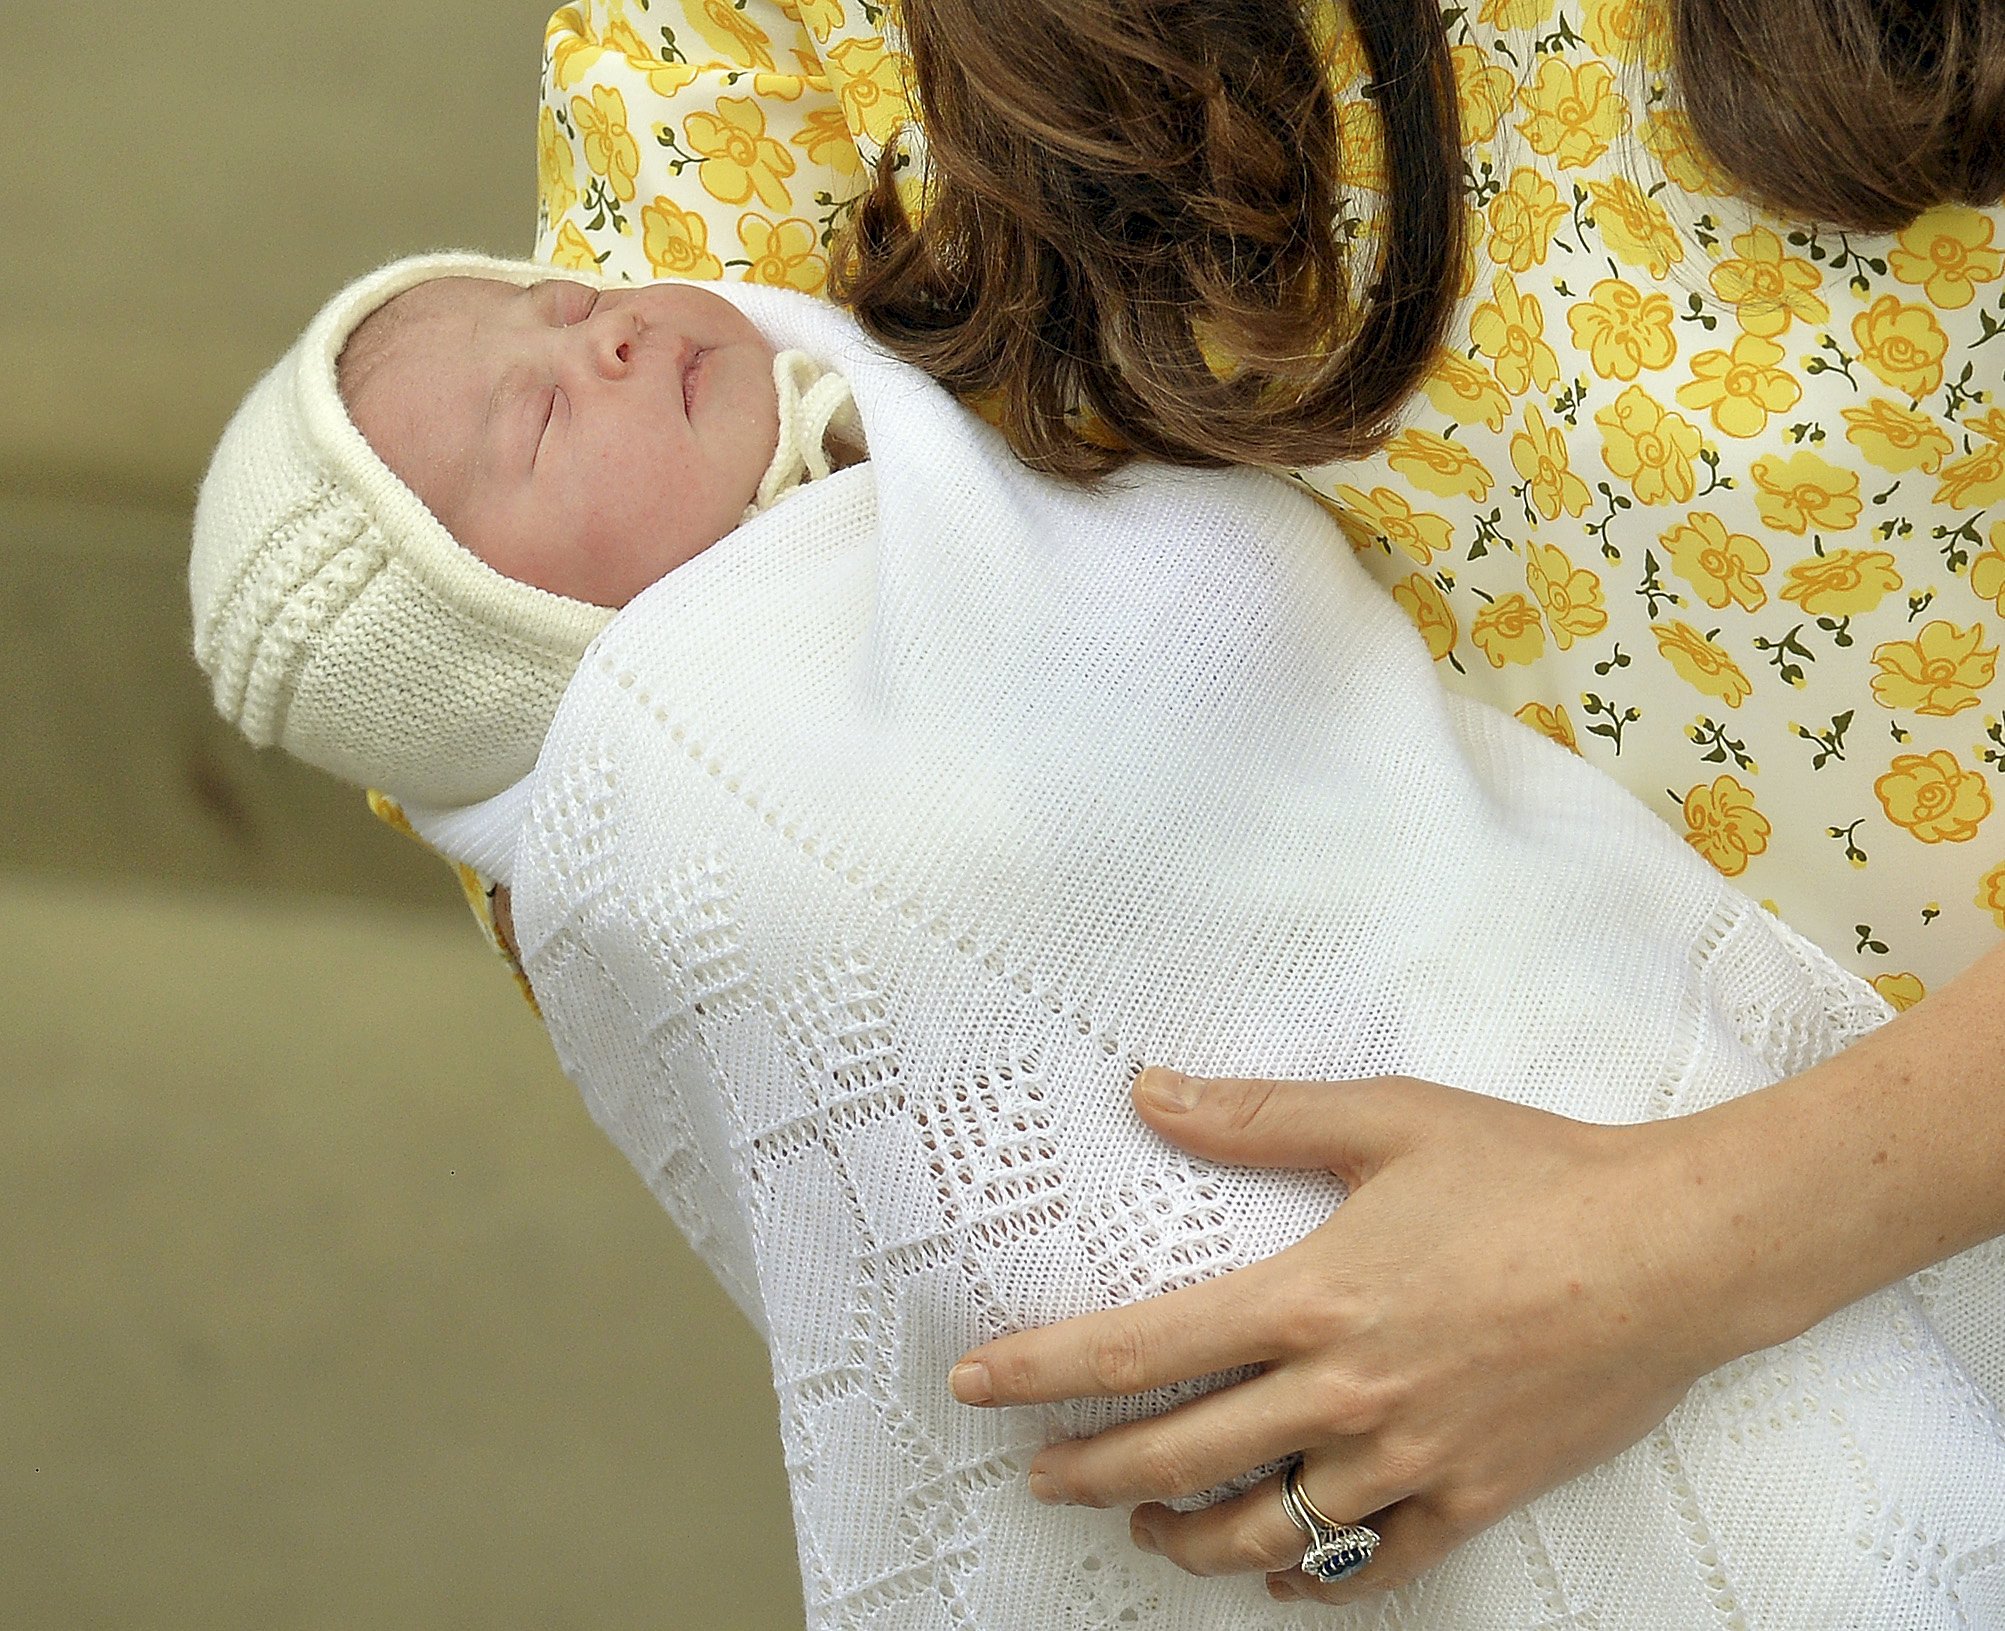 La nueva princesa británica fue presentada a la familia real